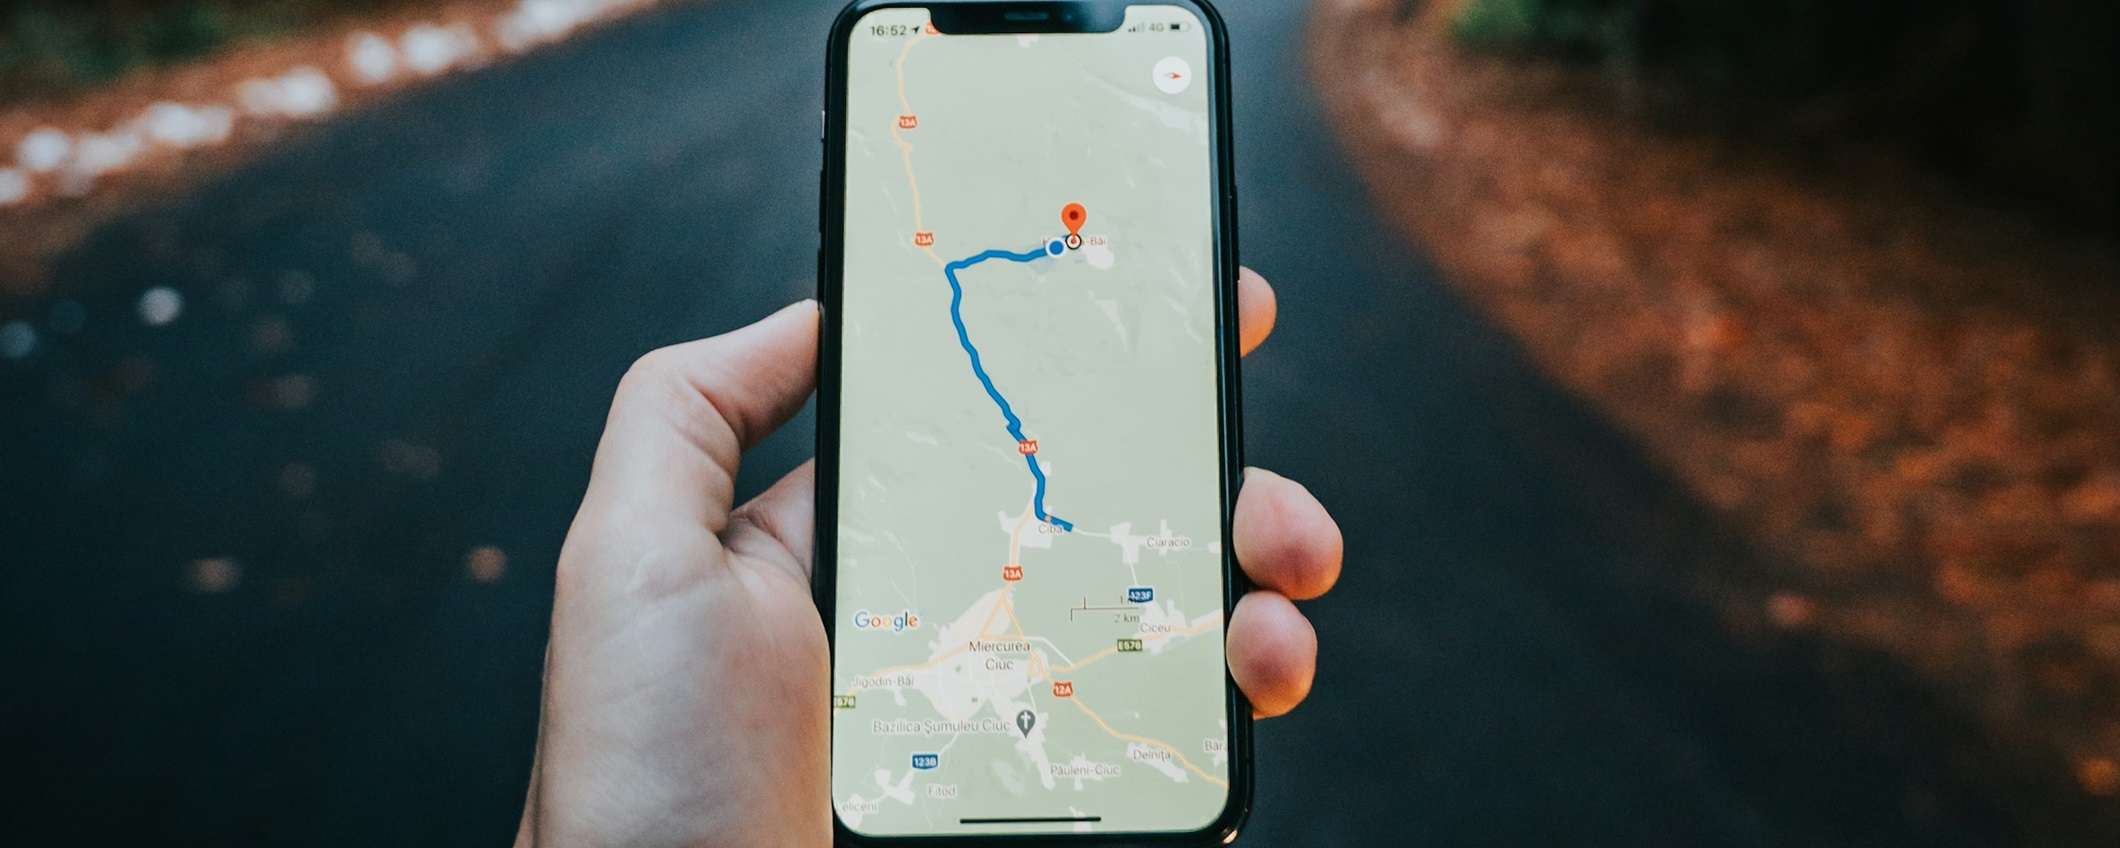 Recensione di Google Maps Vs Waze: qual è la migliore per la navigazione?